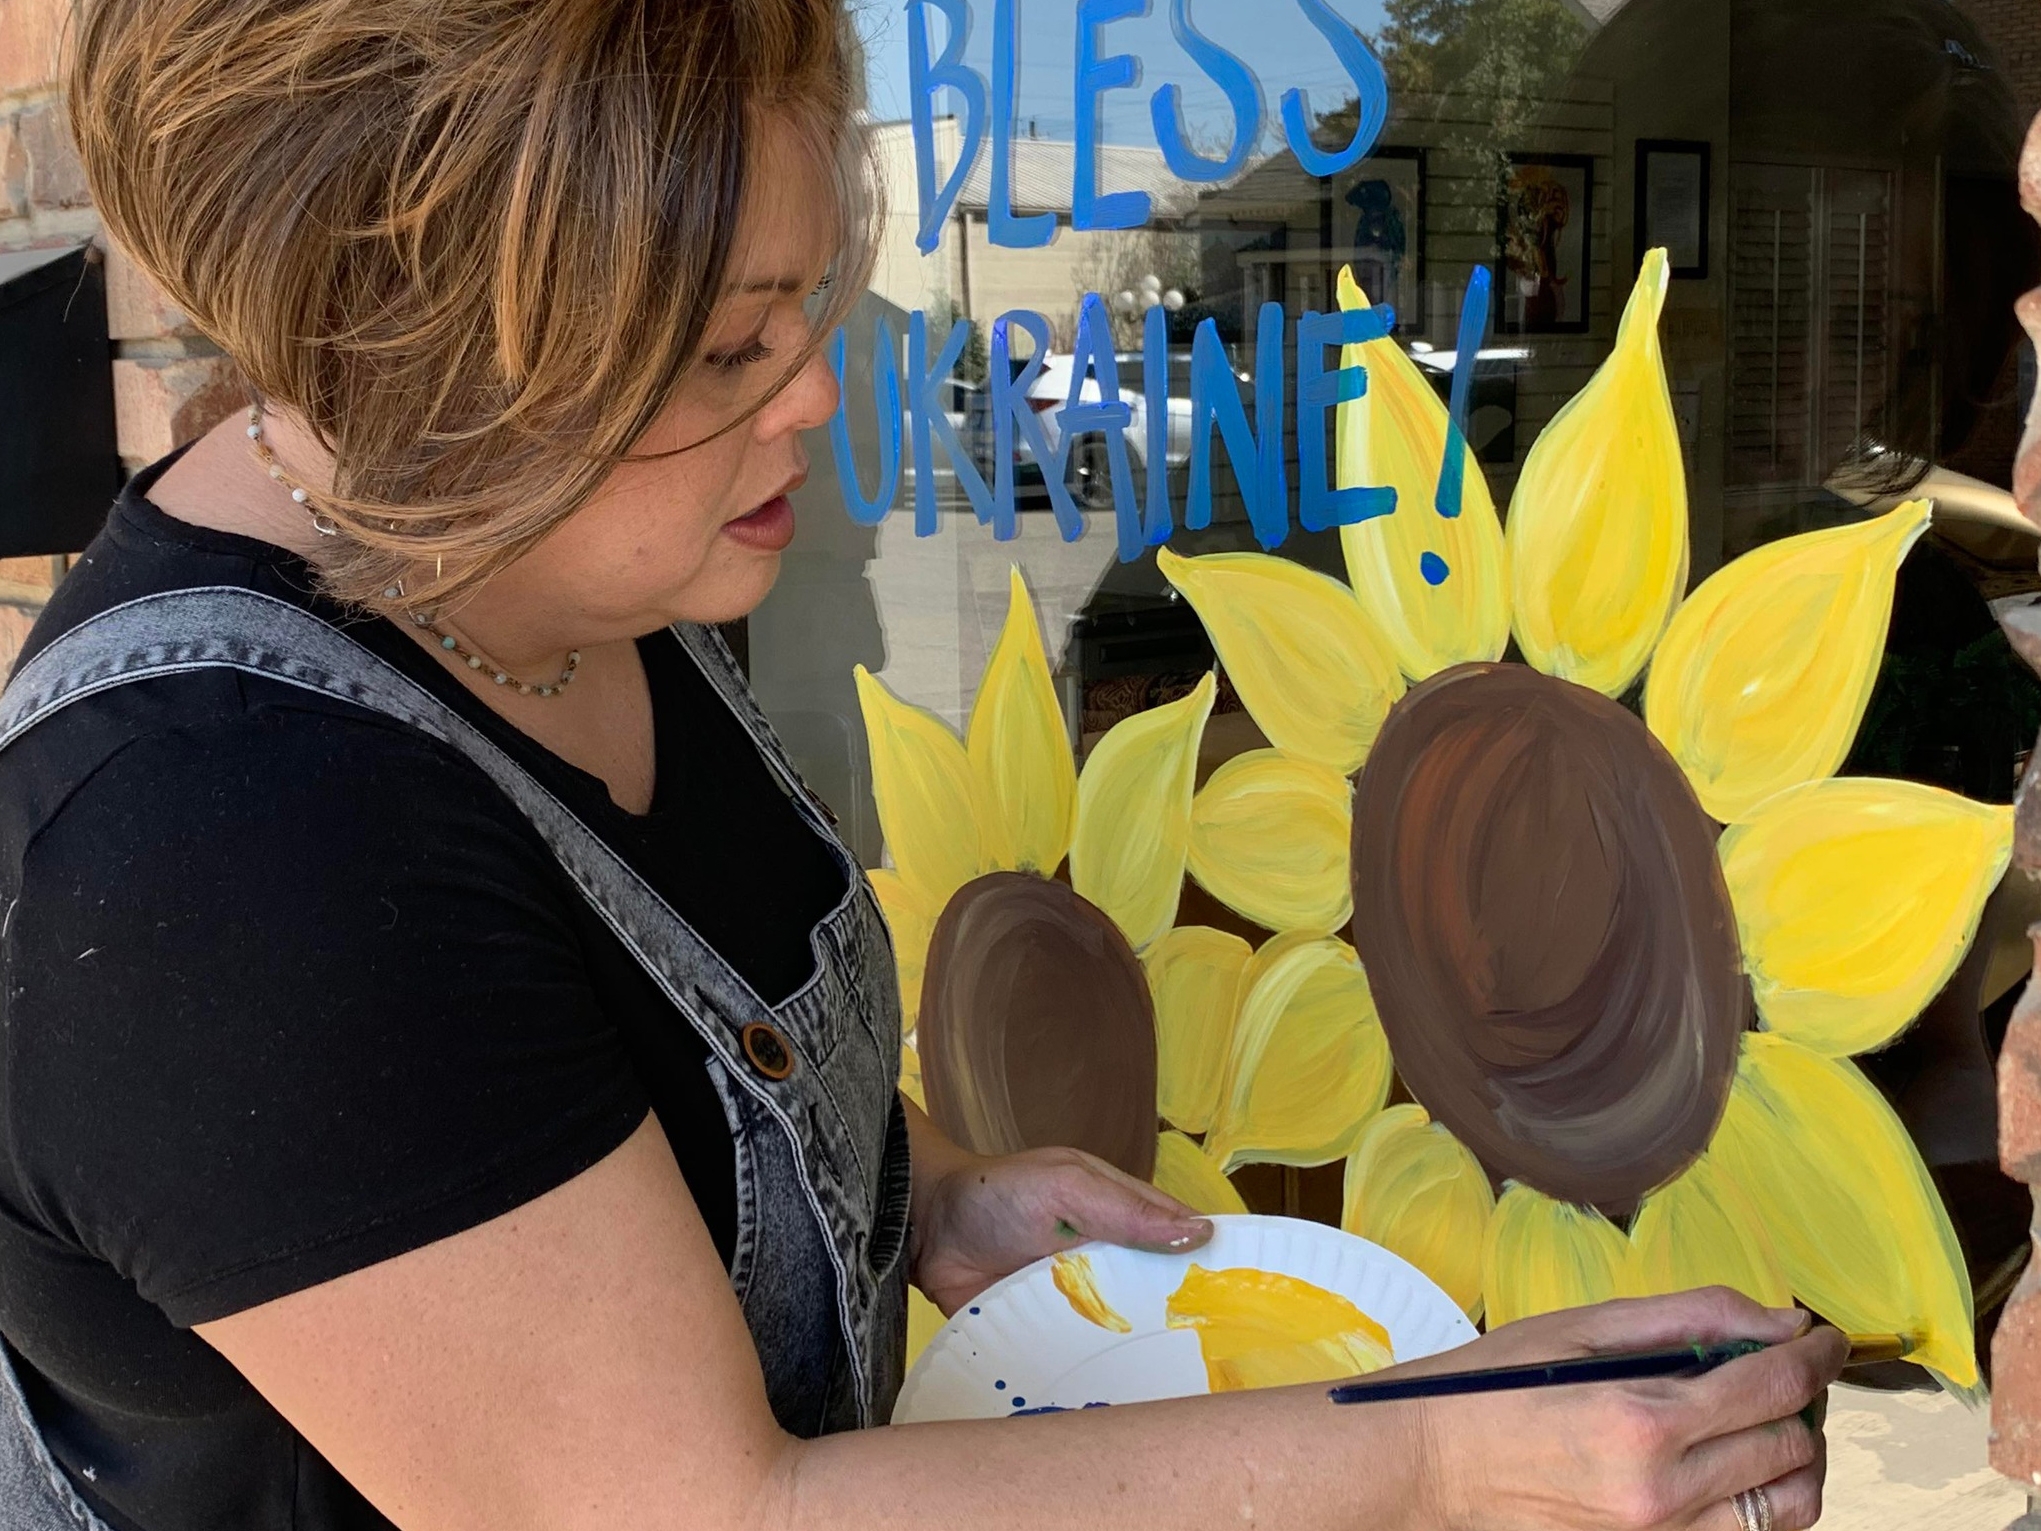 chris barentz painting sunflowers_600x450